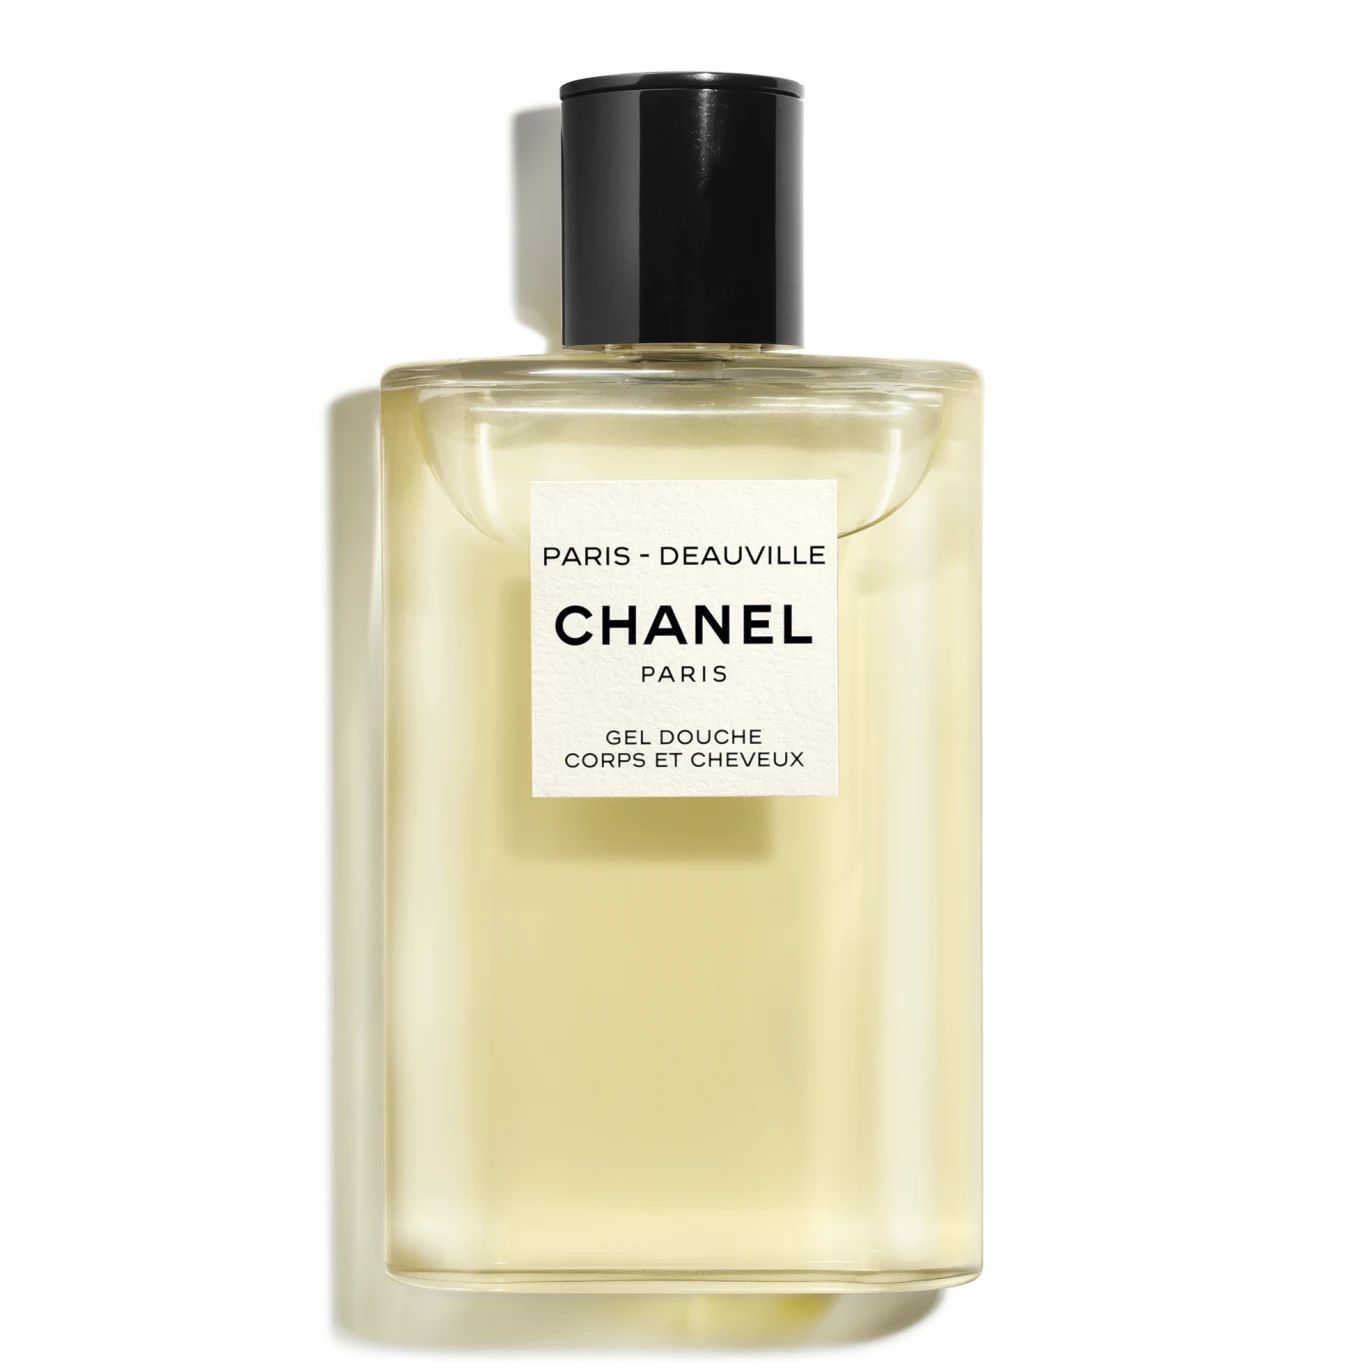 PARIS - DEAUVILLE | Chanel, Inc. (US)